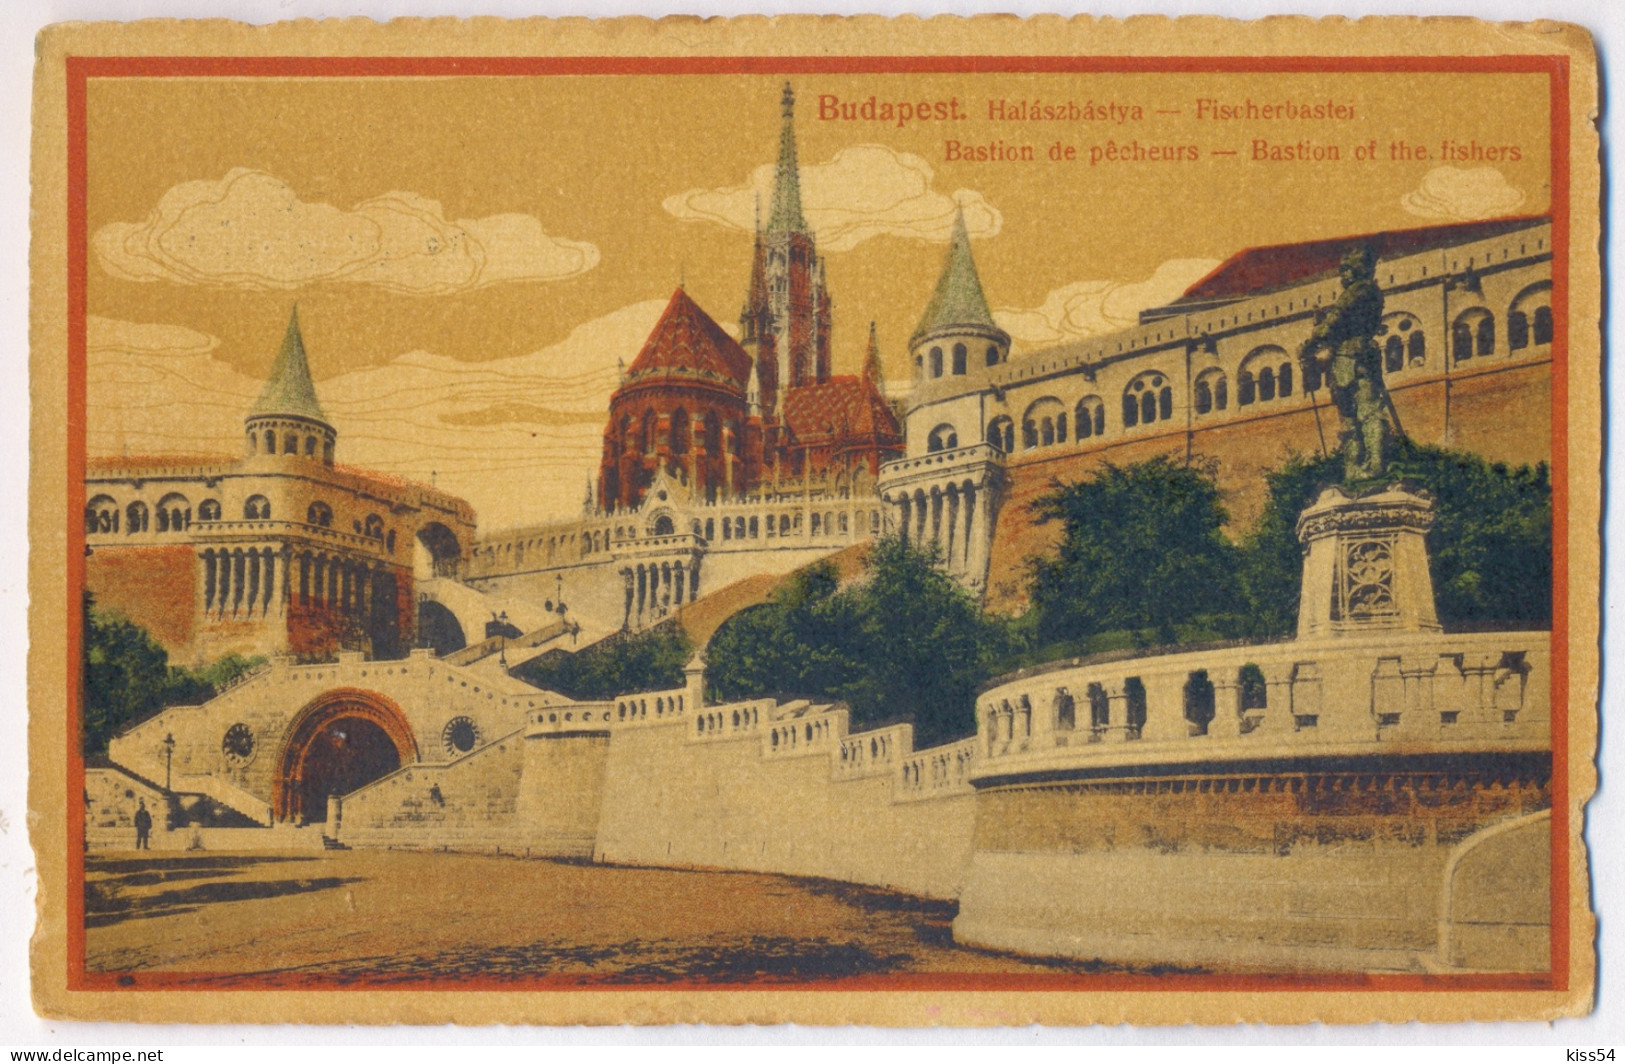 HUN 3 - 792 BUDAPEST, Hungary - Old Postcard - Used - 1925 - Hungary